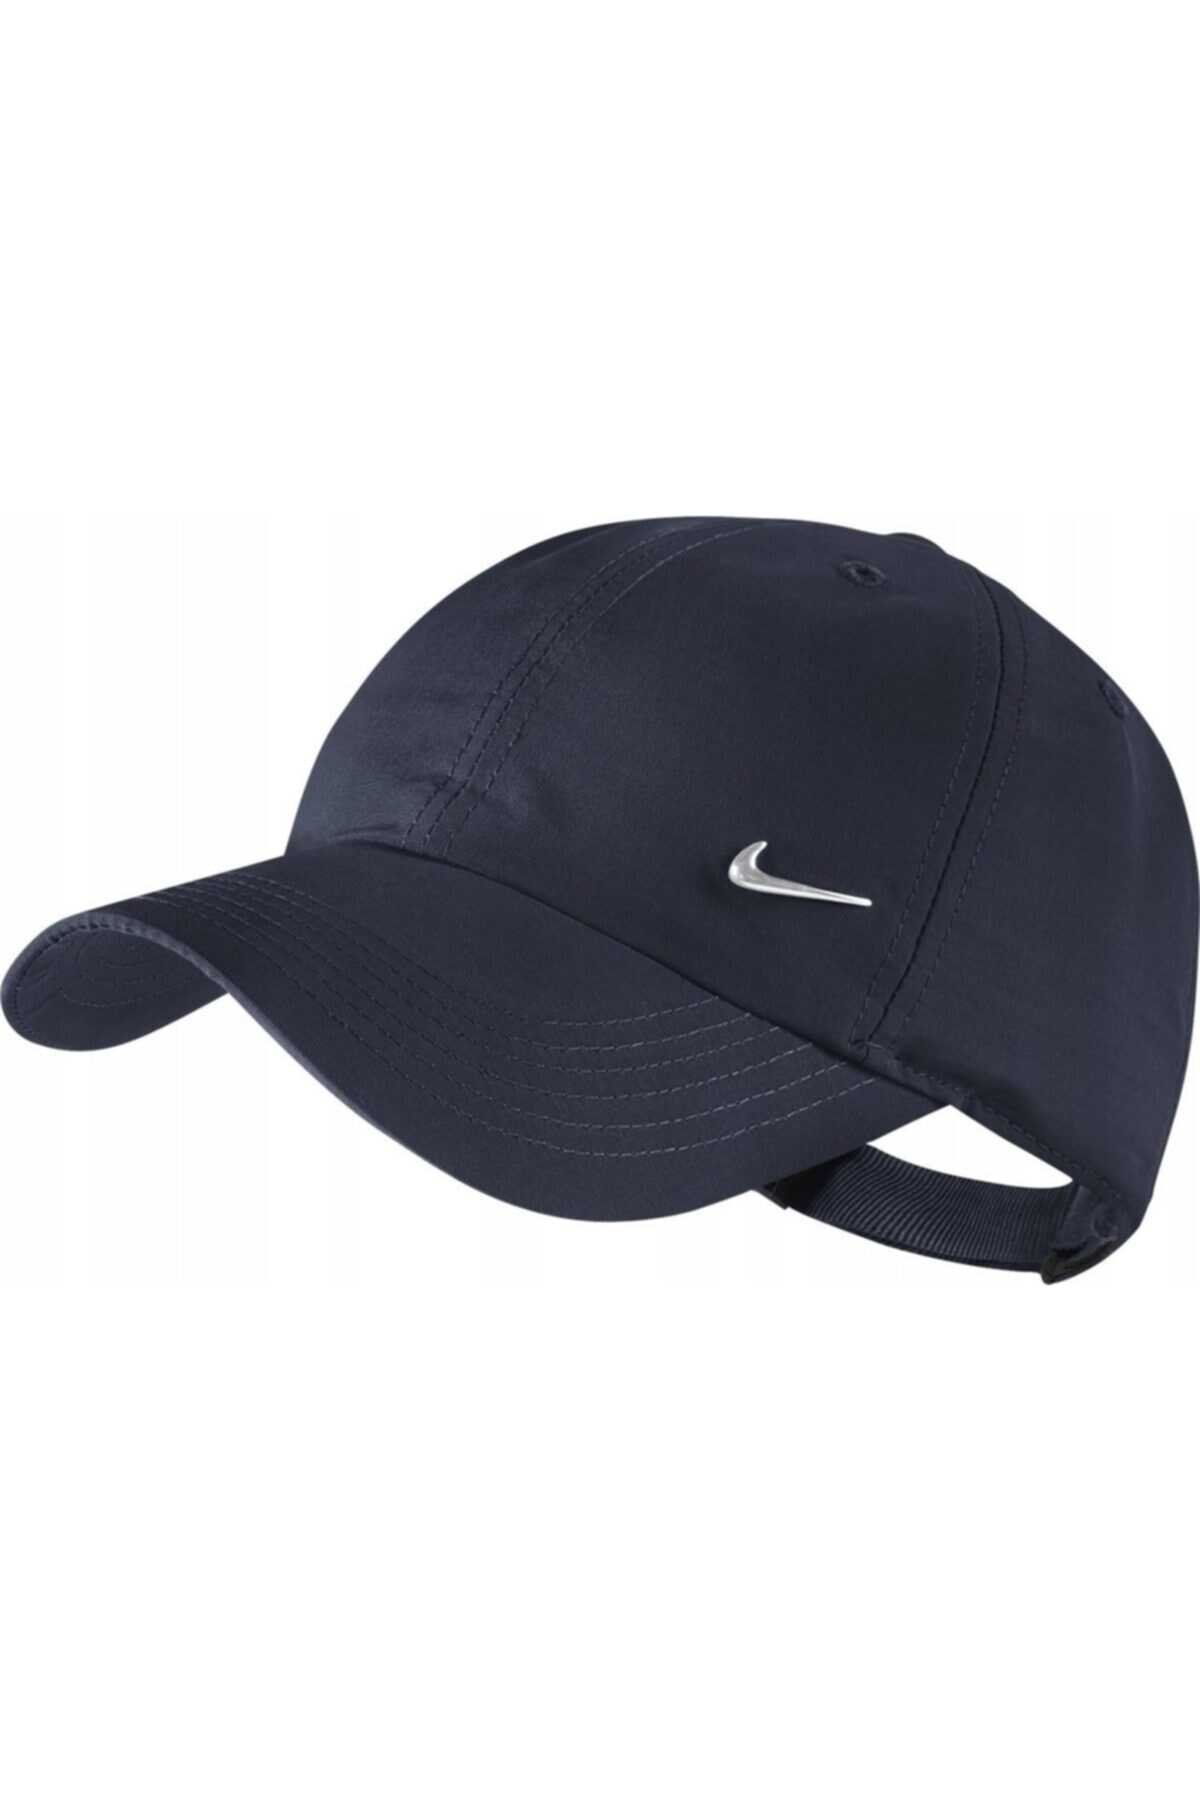 کلاه کپ ورزشی یونیسکس سرمه ای مدل Cw4607-451 برند Nike 